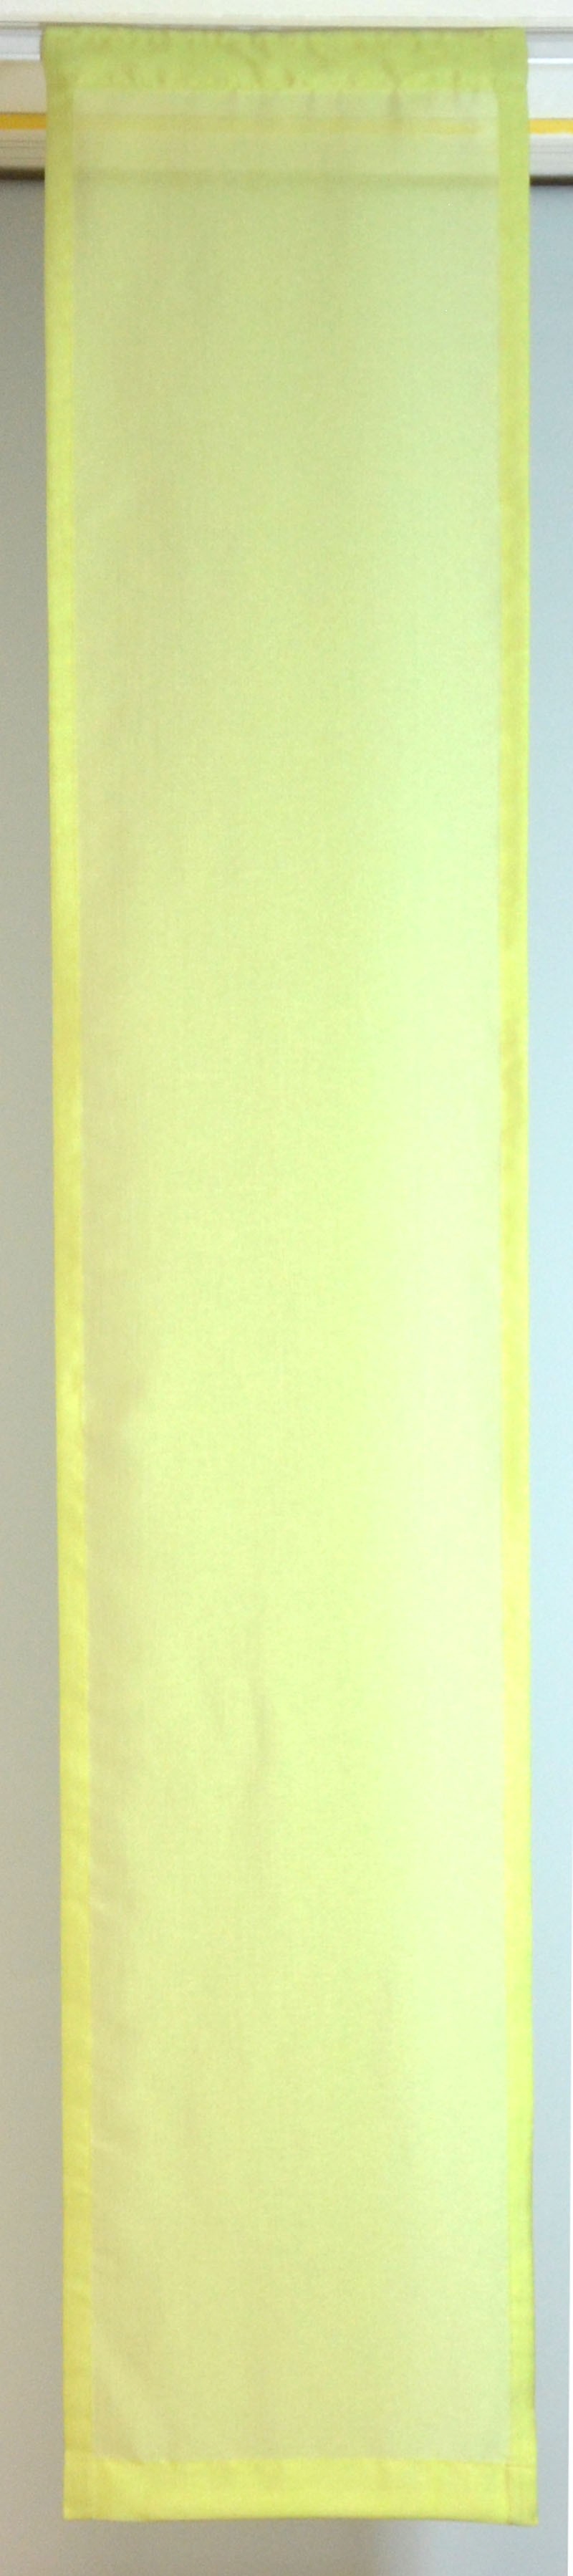 Flächenvorhang grün 37 cm breit x 200 cm hoch ( incl. Beschwerungsstab )